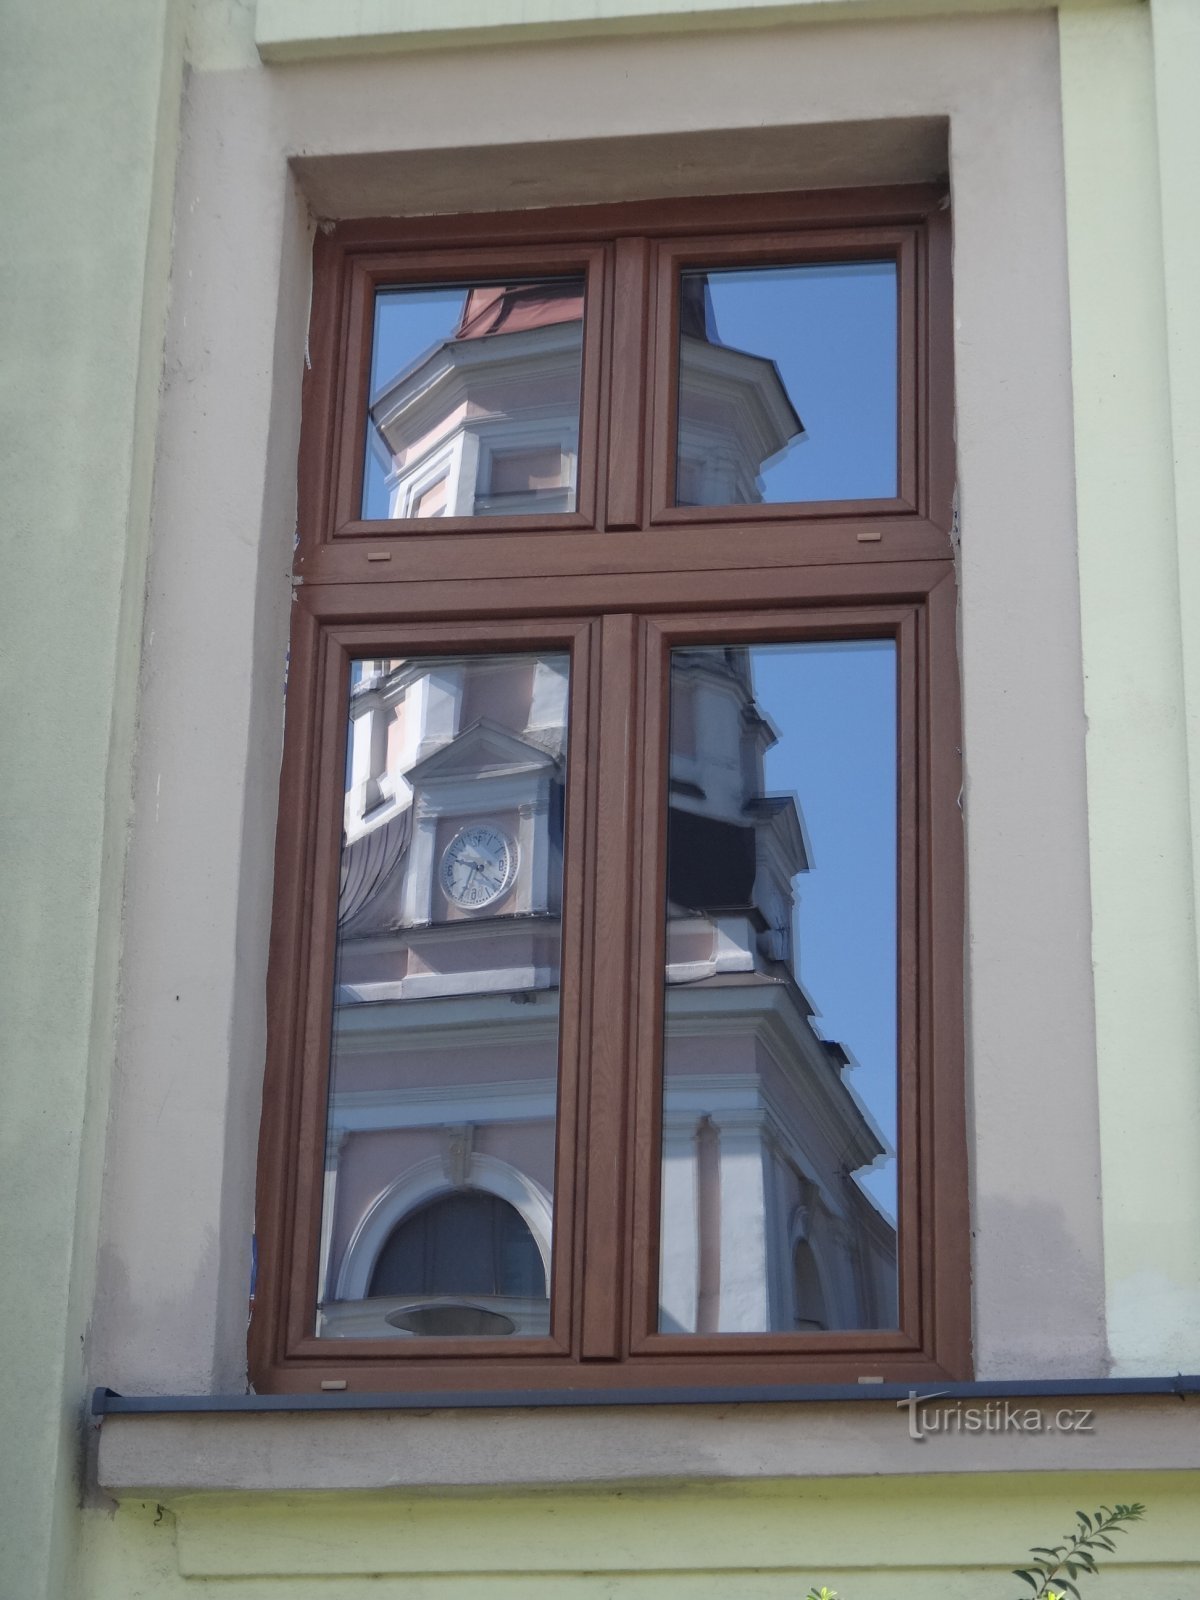 市庁舎の窓に映る教会の姿